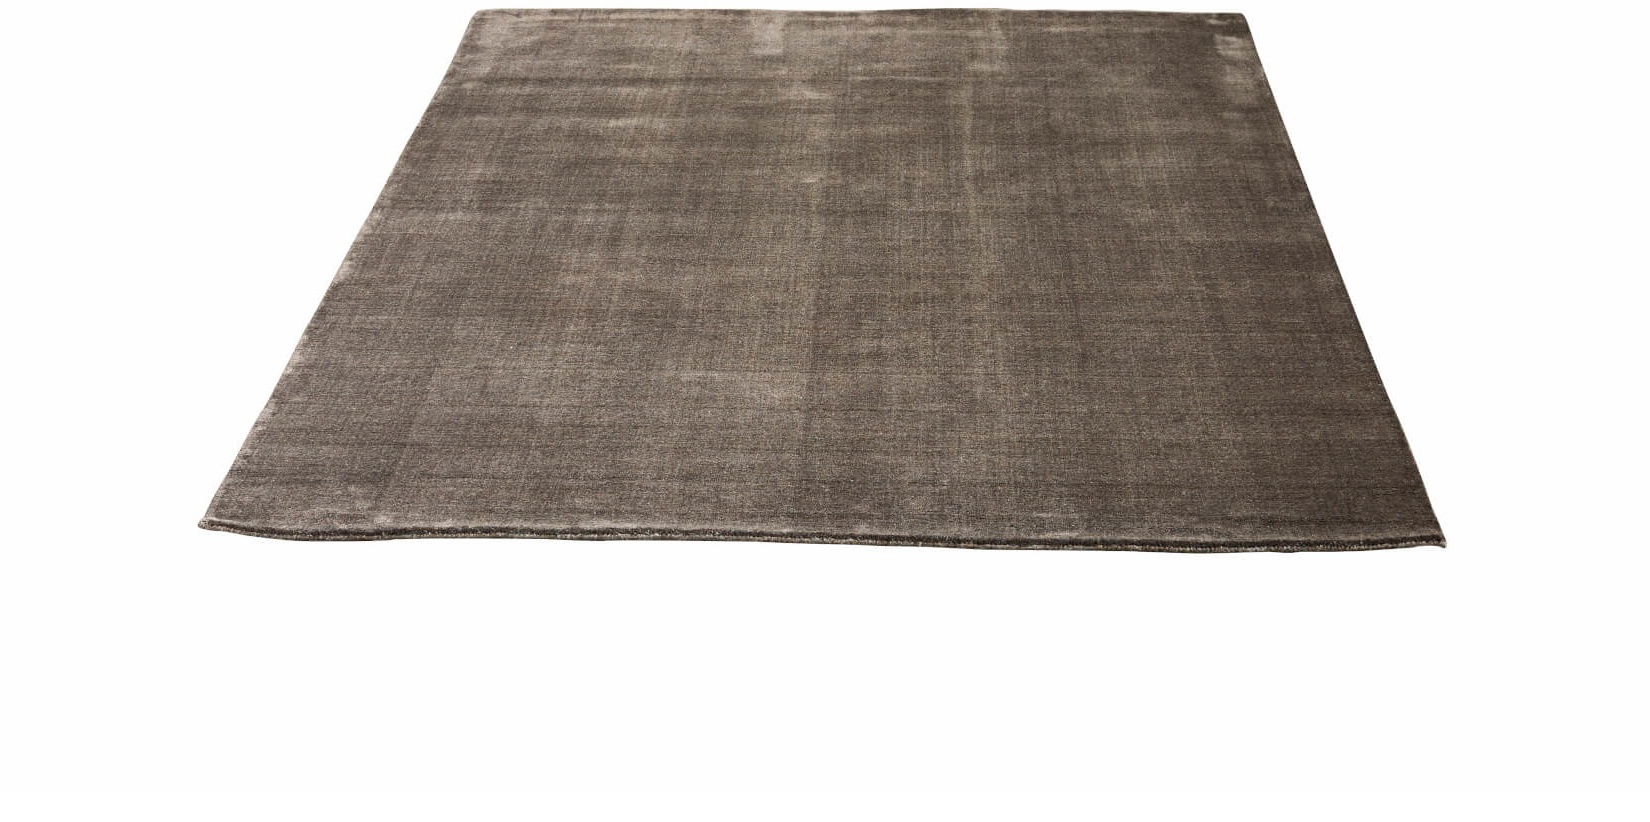 Earth Bamboo Teppich, 300 x 400 cm, wam grey